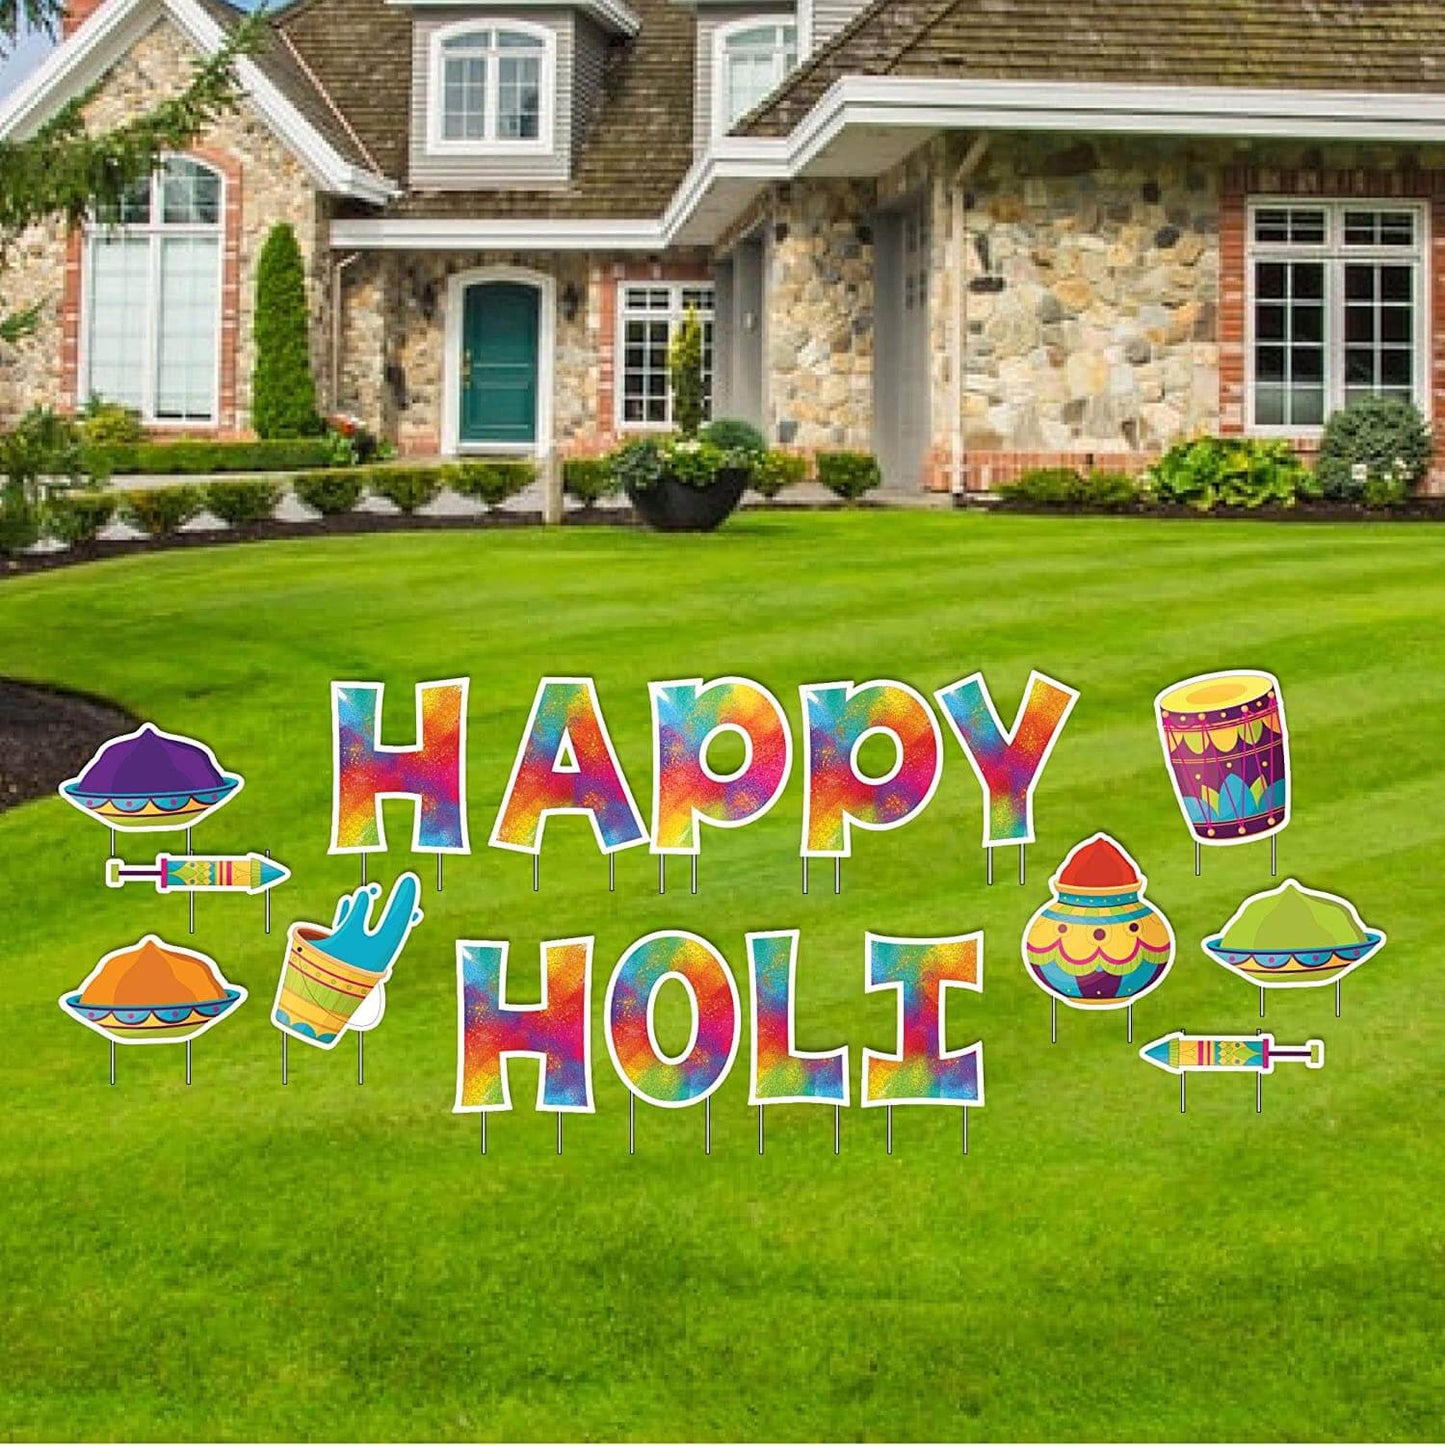 Happy Holi Festival Yard Card Decoration